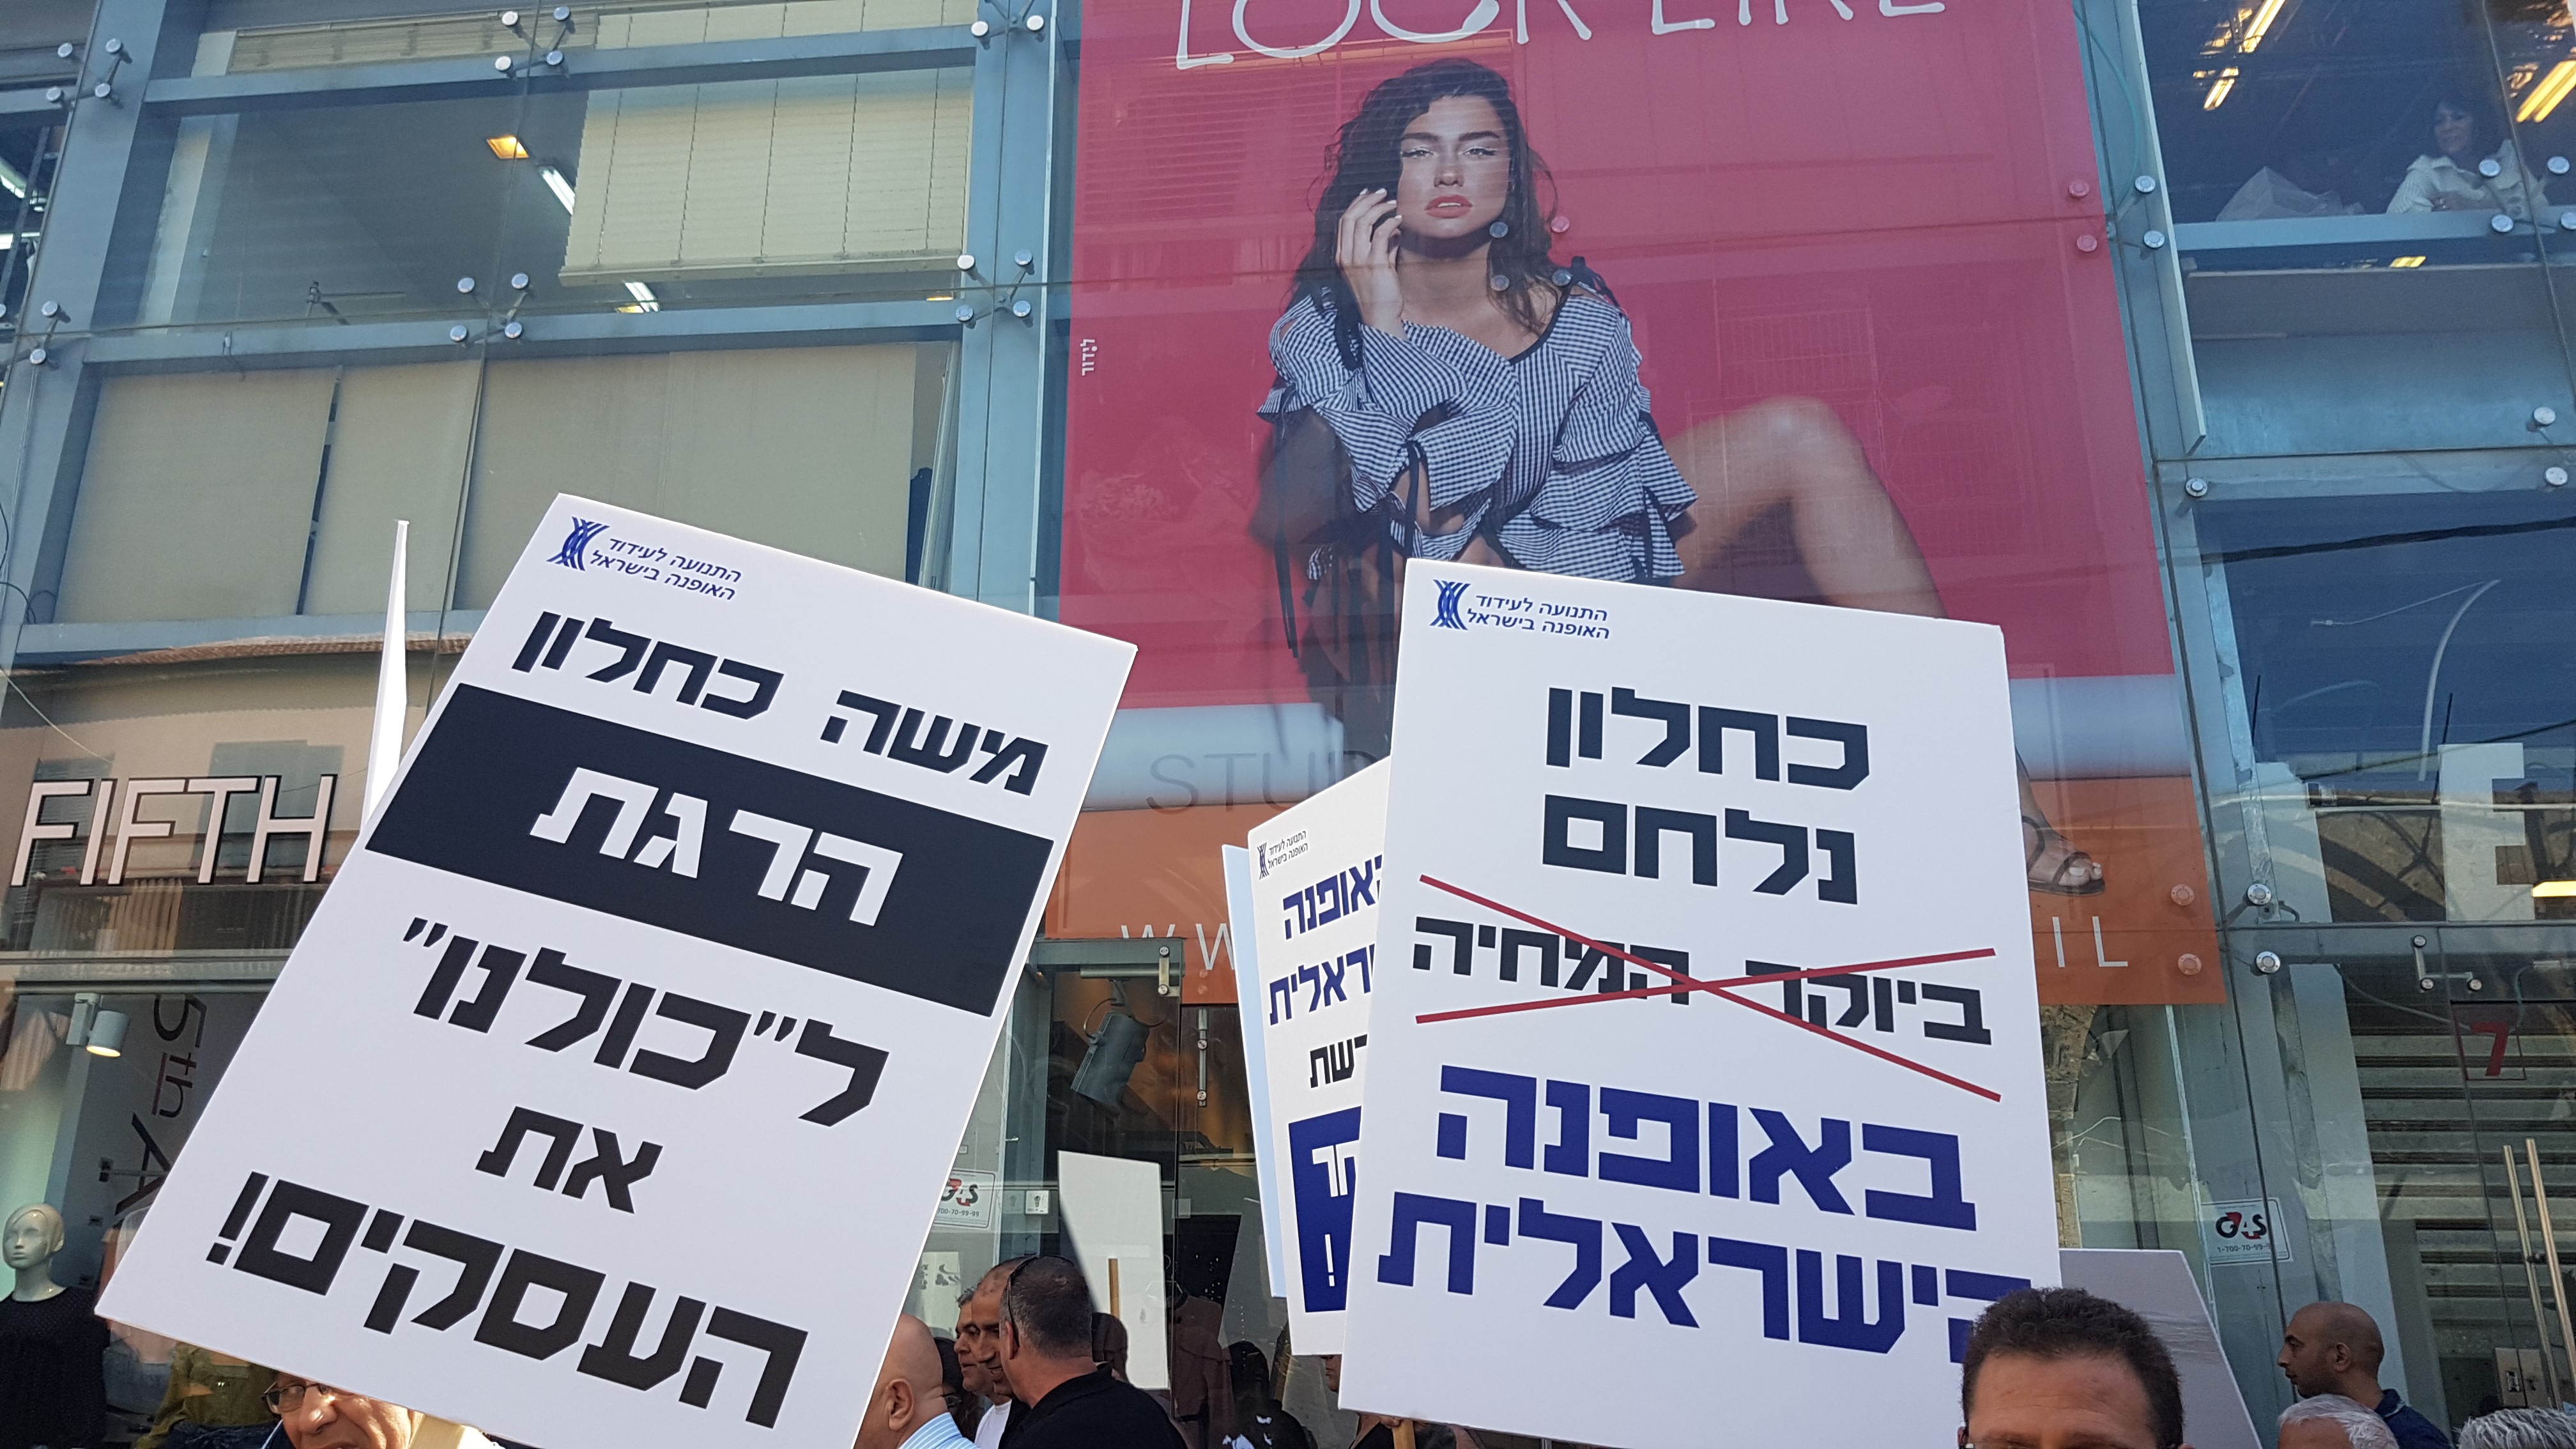 "Кахлон, ты убиваешь наш бизнес!" Демонстрация протеста в Тель-Авиве. Фото: Моран Регев